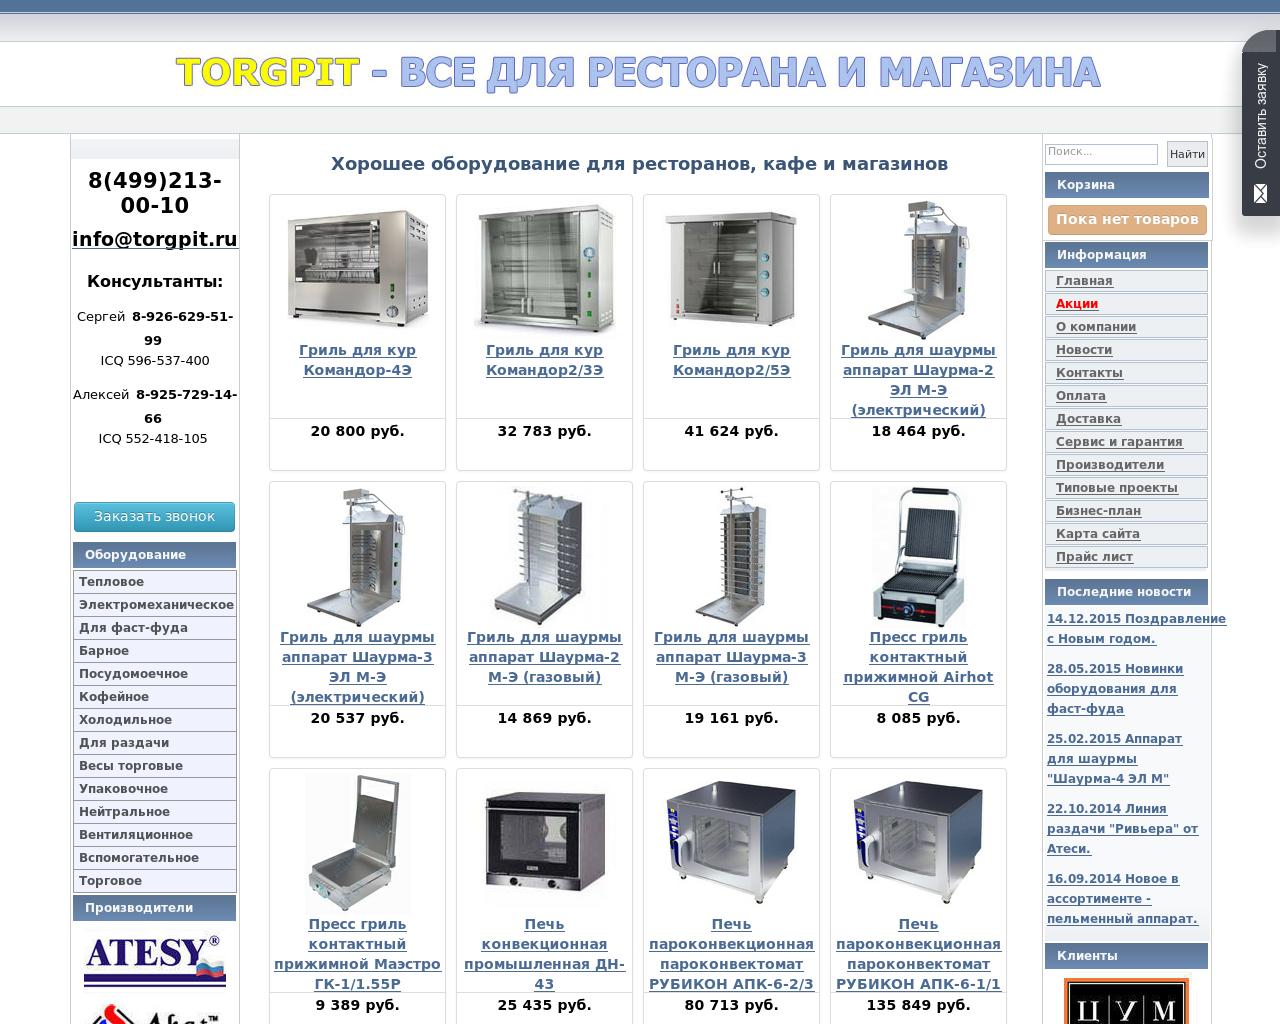 Изображение сайта torgpit.ru в разрешении 1280x1024